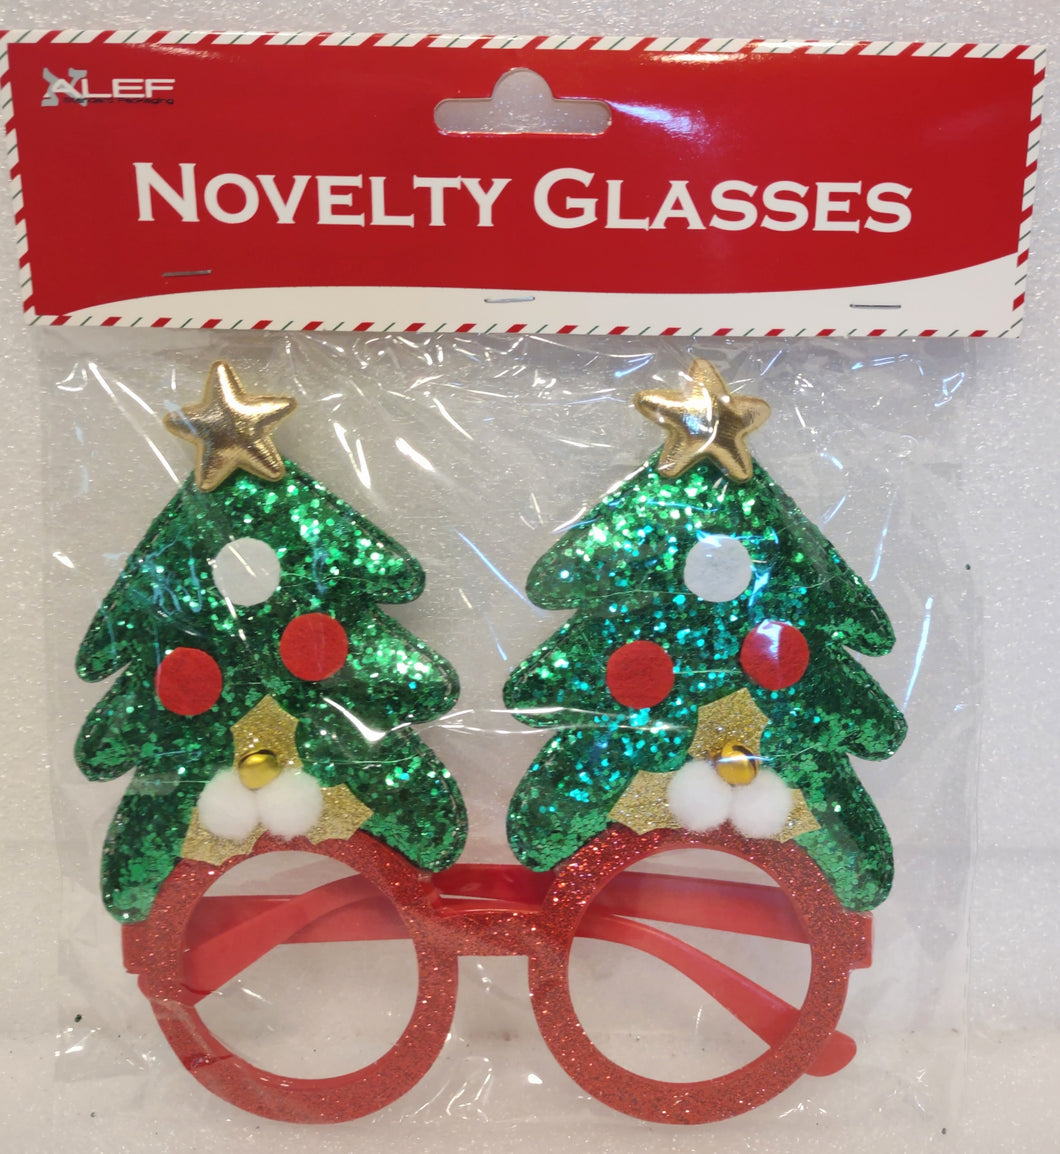 Novelty Christmas Tree Glasses Assortment